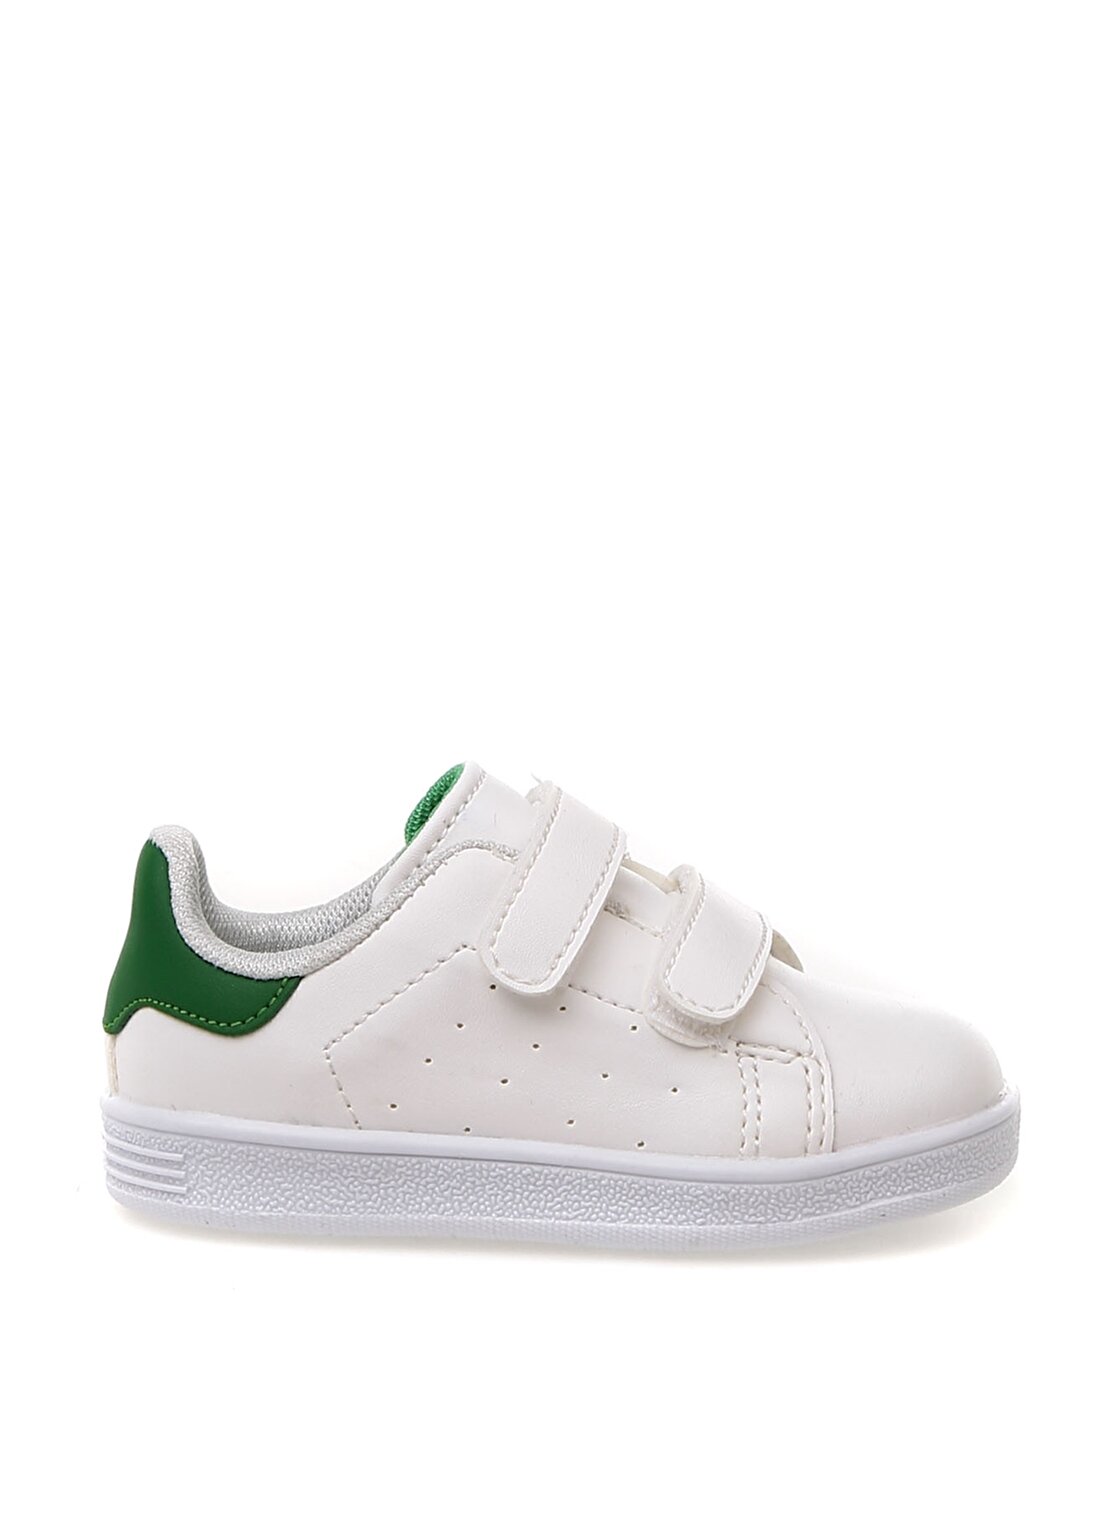 Mammaramma Beyaz - Yeşil Yürüyüş Ayakkabısı